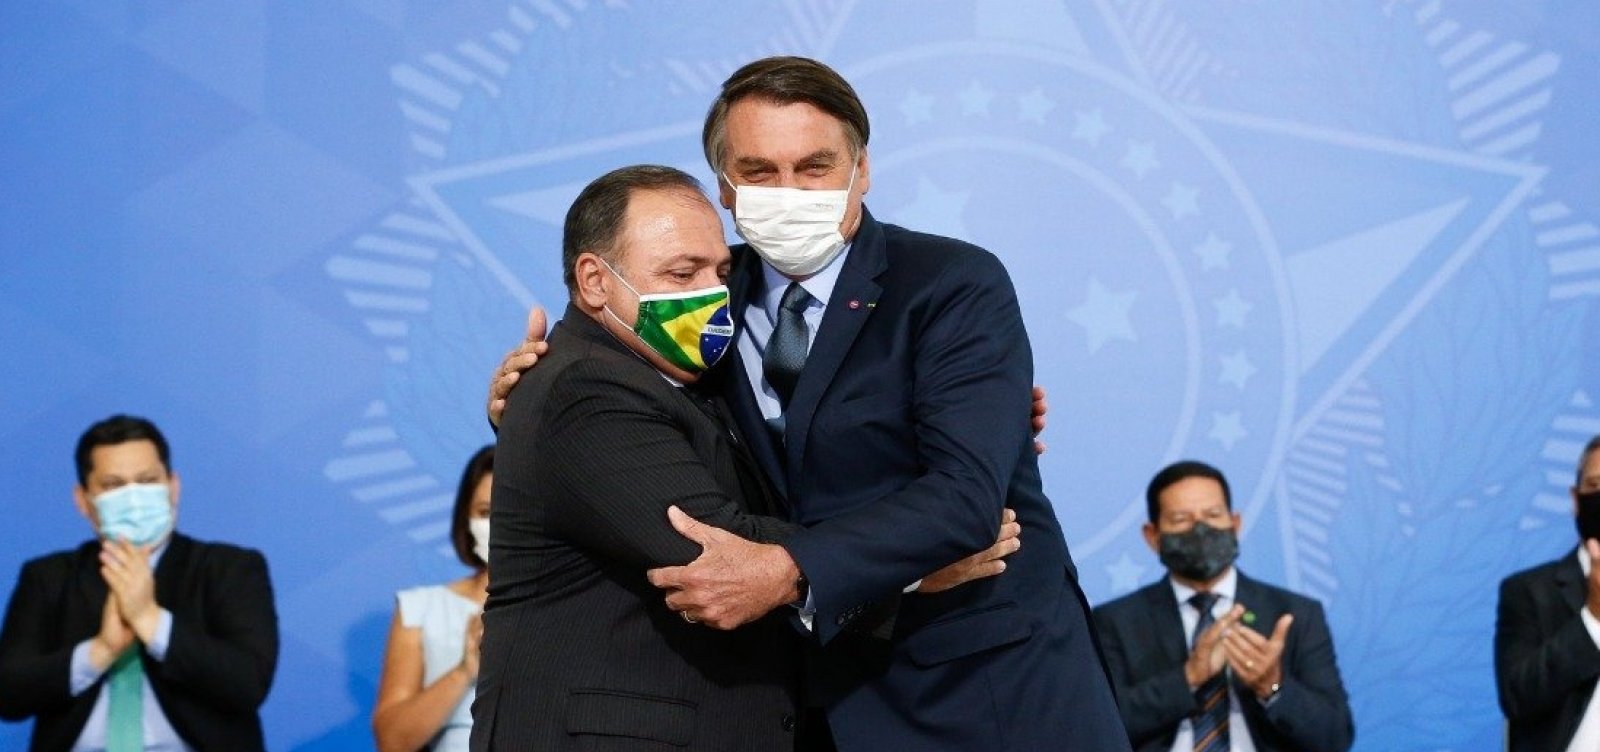 Pazuello 'quer aparecer, como o Mandetta', diz Bolsonaro